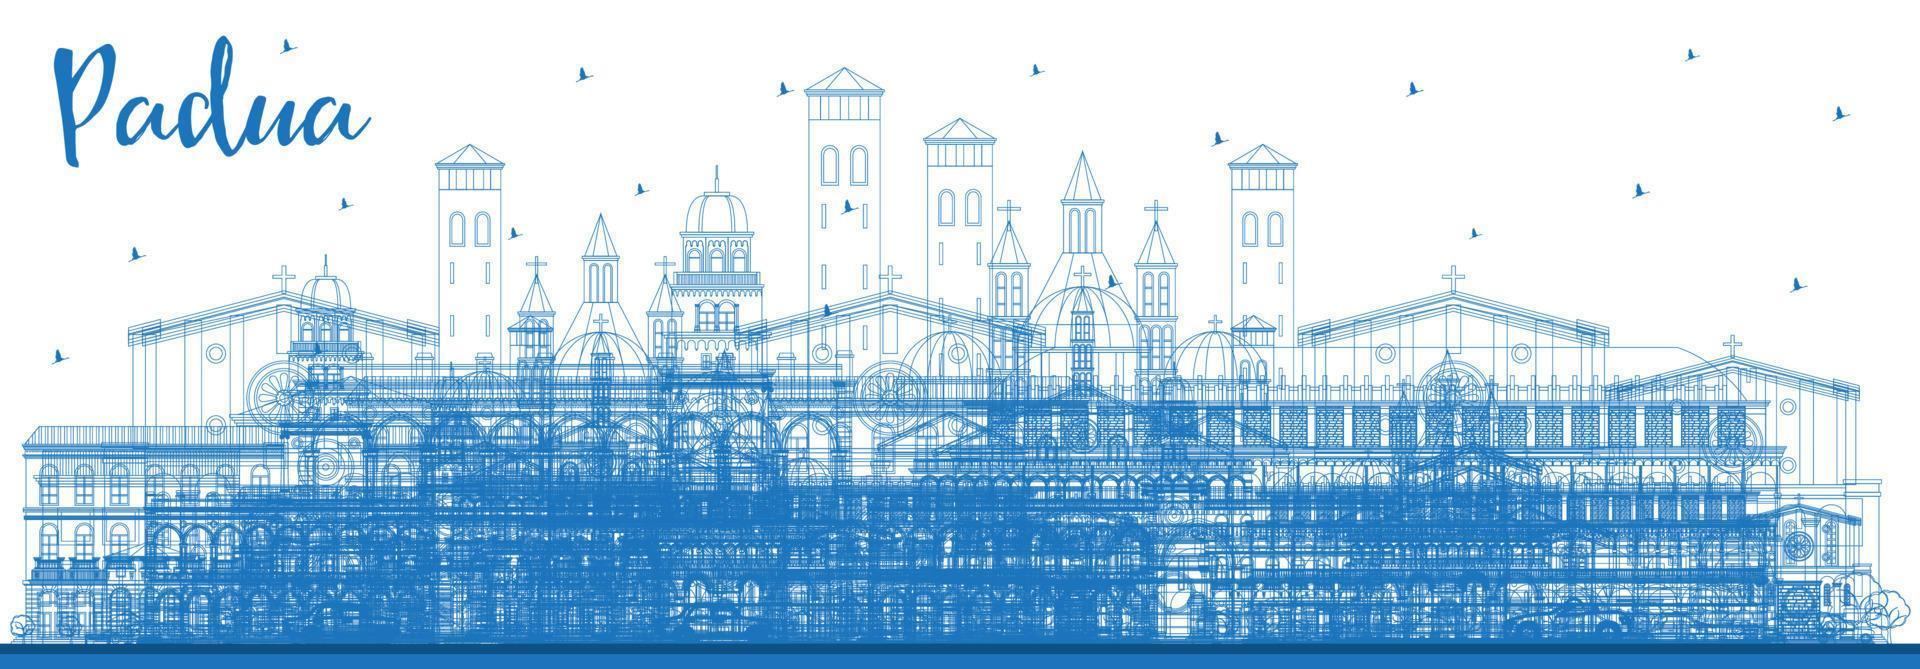 décrire les toits de la ville de padoue italie avec des bâtiments bleus. illustration vectorielle. vecteur